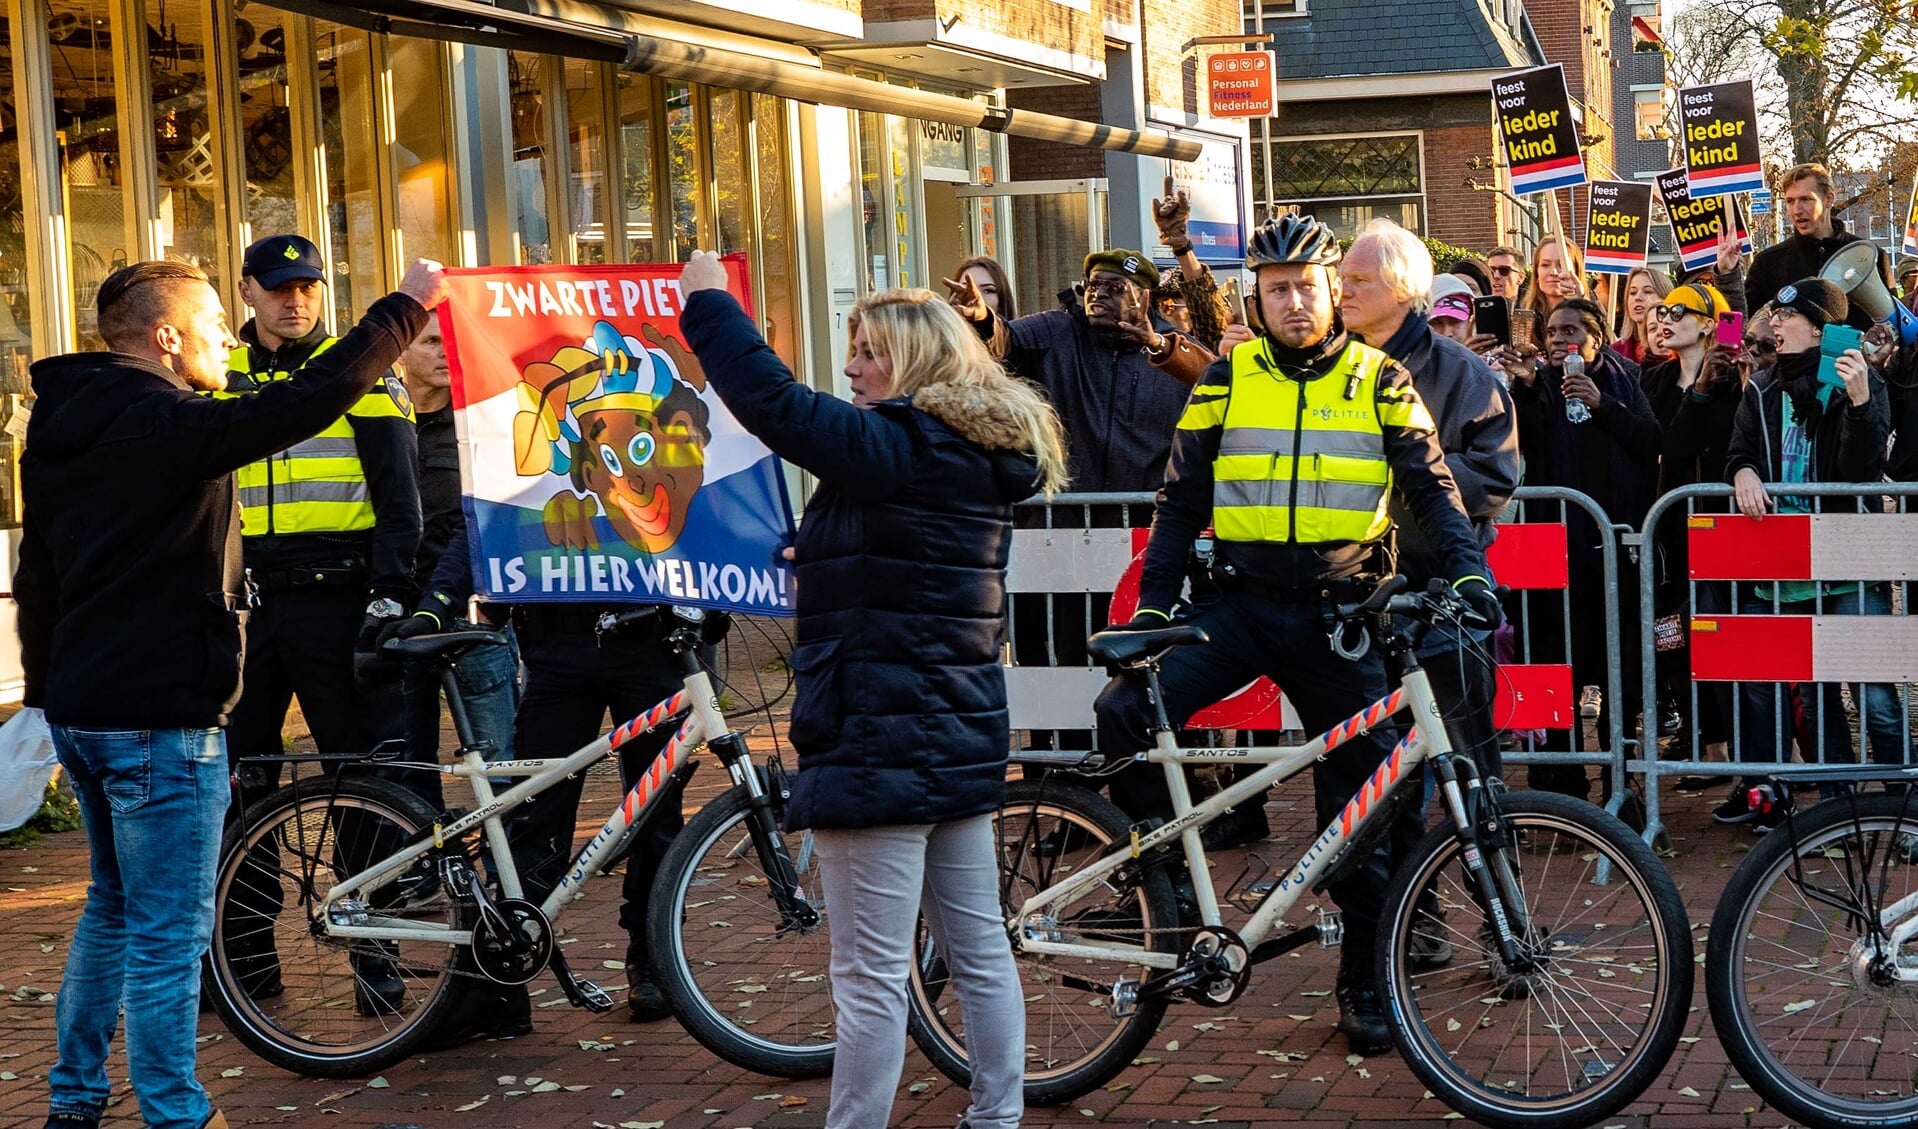 Vlak voordat de stoet van Sinterklaas zou arriveren op de kop van de Groest lieten pro Zwarte Piet-betogers van zich horen.